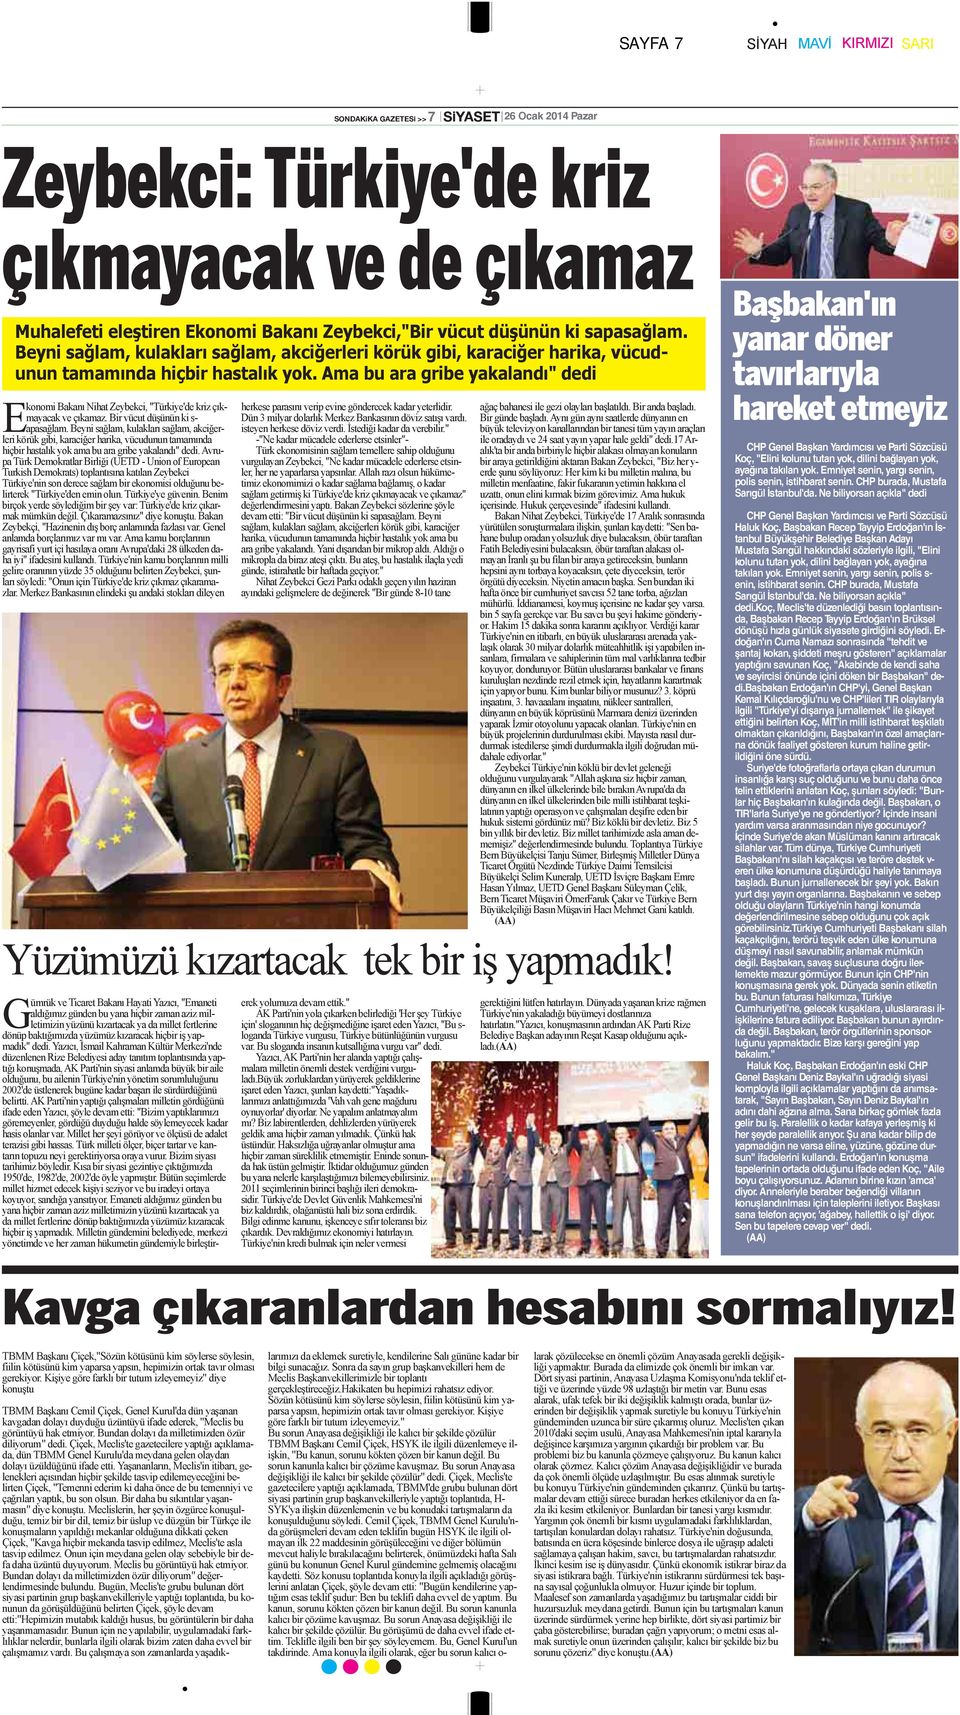 Ama bu ara gribe yakalandı" dedi Ekonomi Bakanı Nihat Zeybekci, "Türkiye'de kriz çıkmayacak ve çıkamaz. Bir vücut düşünün ki s- apasağlam.